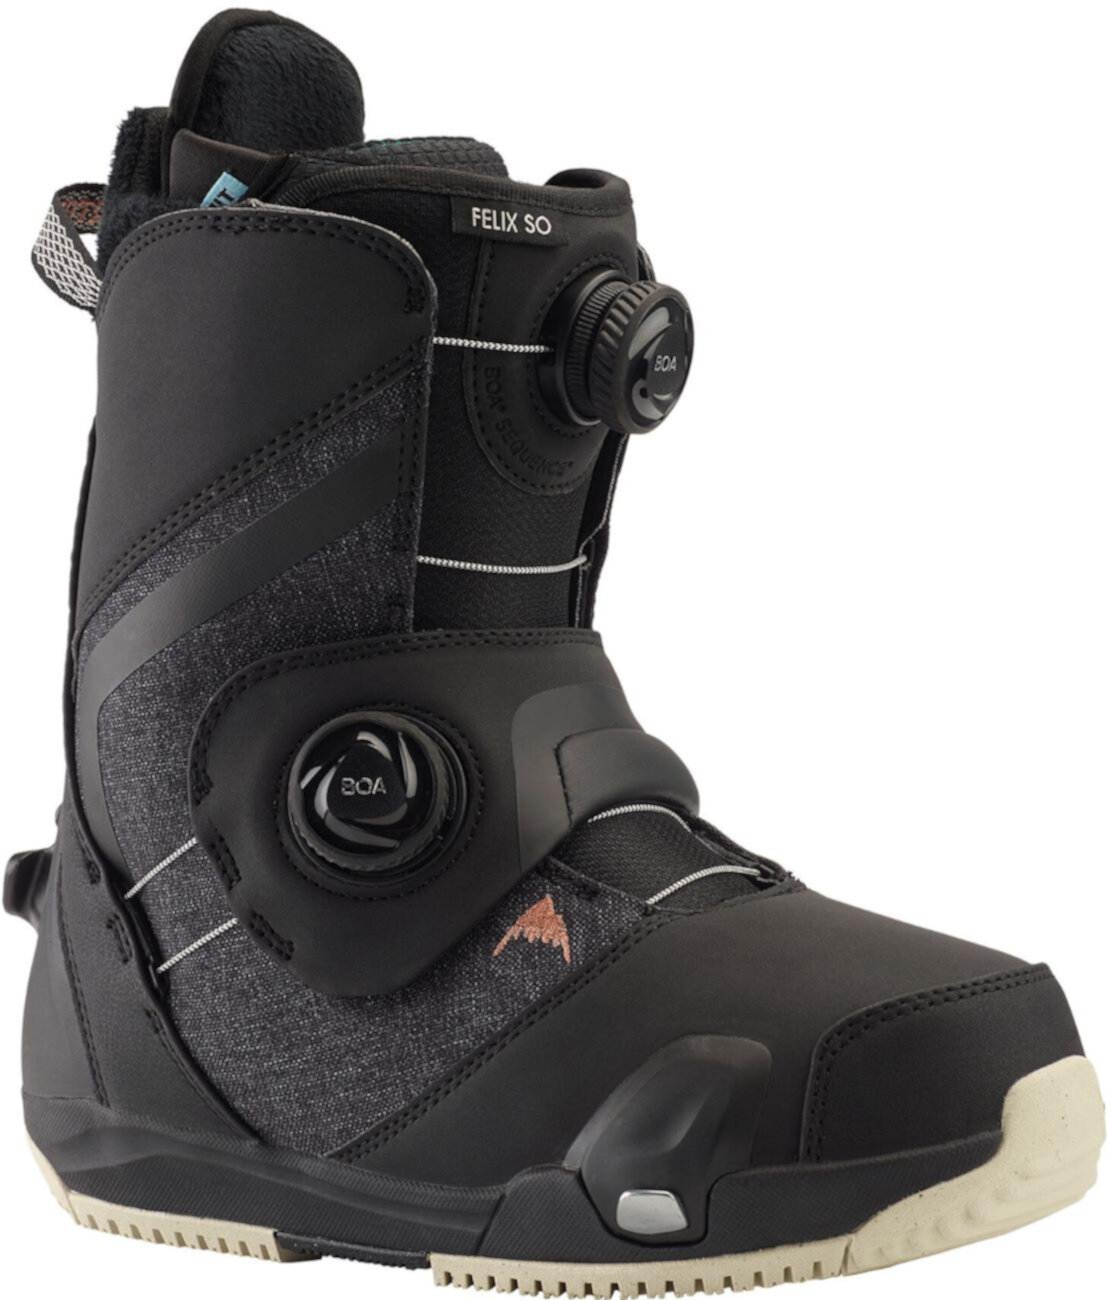 Ботинки для сноуборда Felix Step On - Женские - 2020/2021 Burton